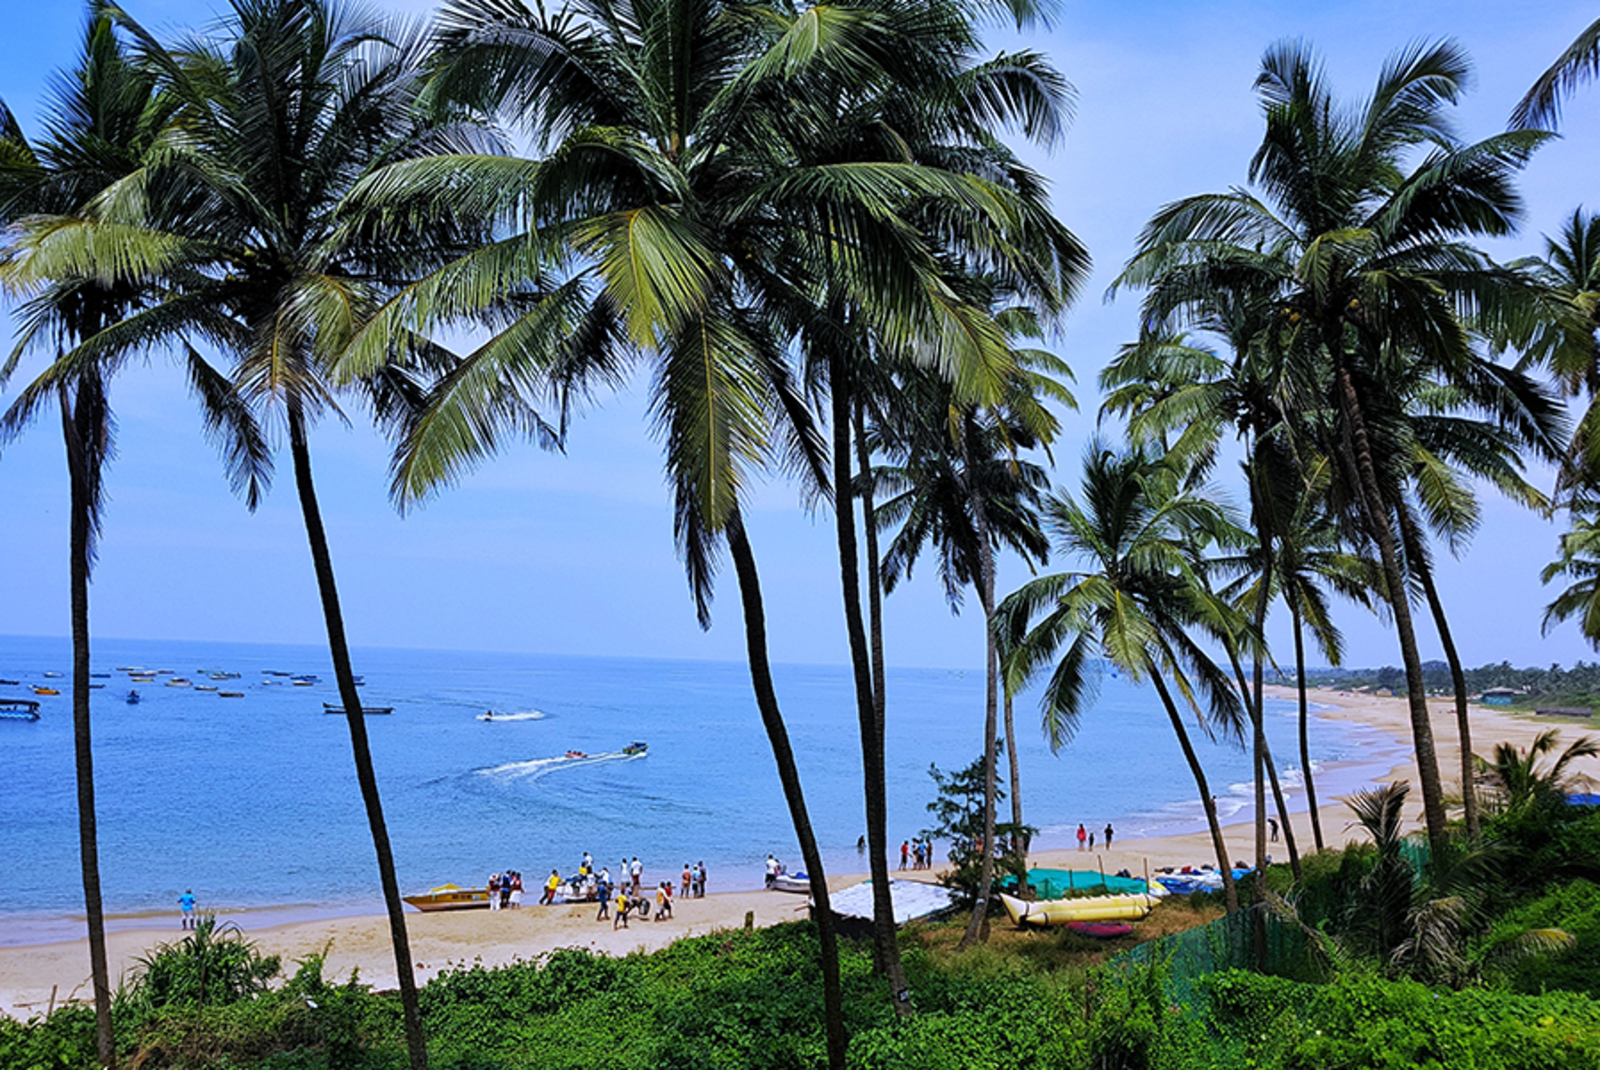 The First-Timer’s Guide to Mumbai & Goa, India - Day 4: Goa Beaches